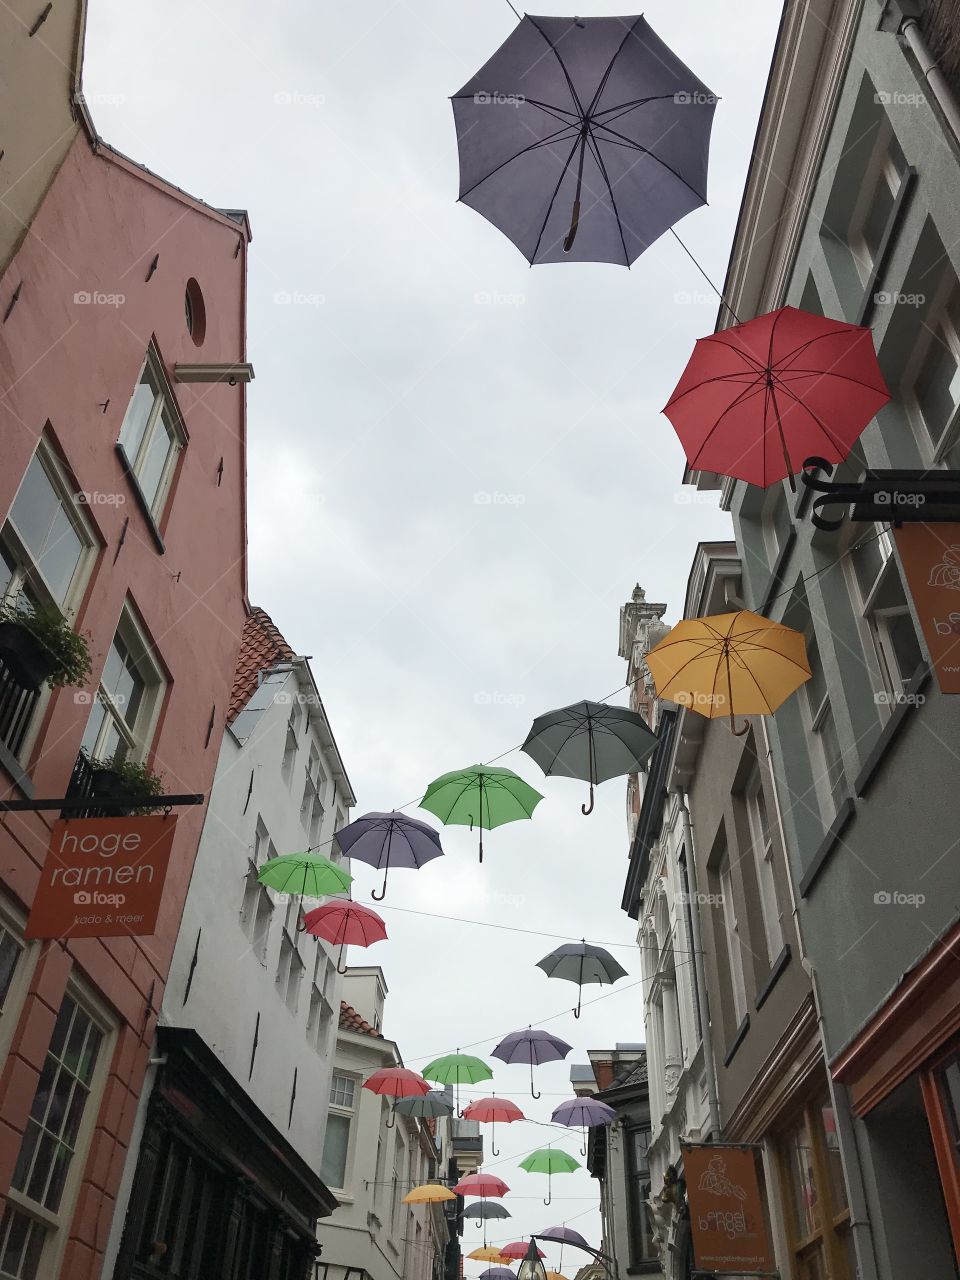 Umbrellas, street, houses